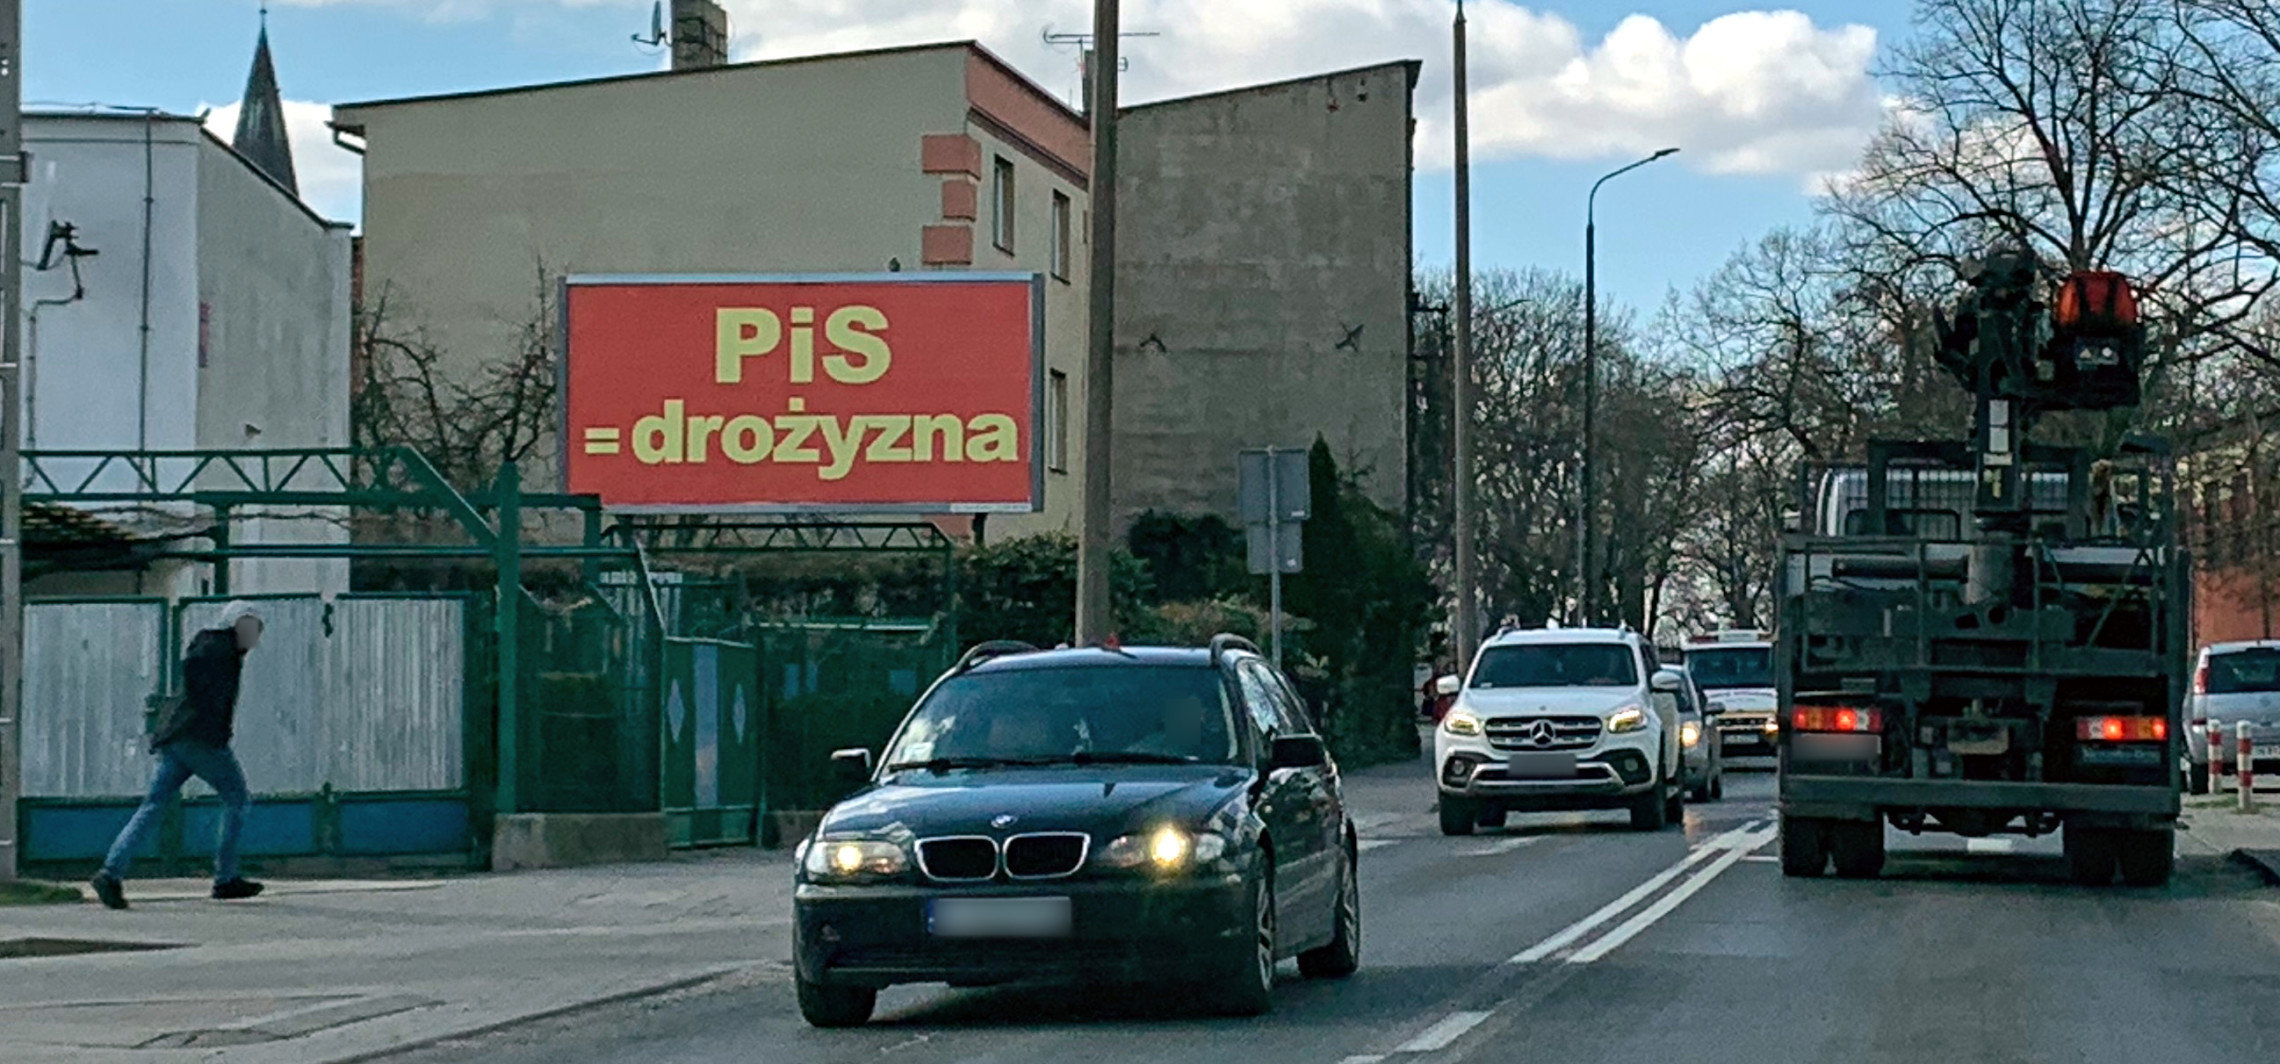 Inowrocław - PIS = drożyzna. Takie banery pojawiają się w Inowrocławiu